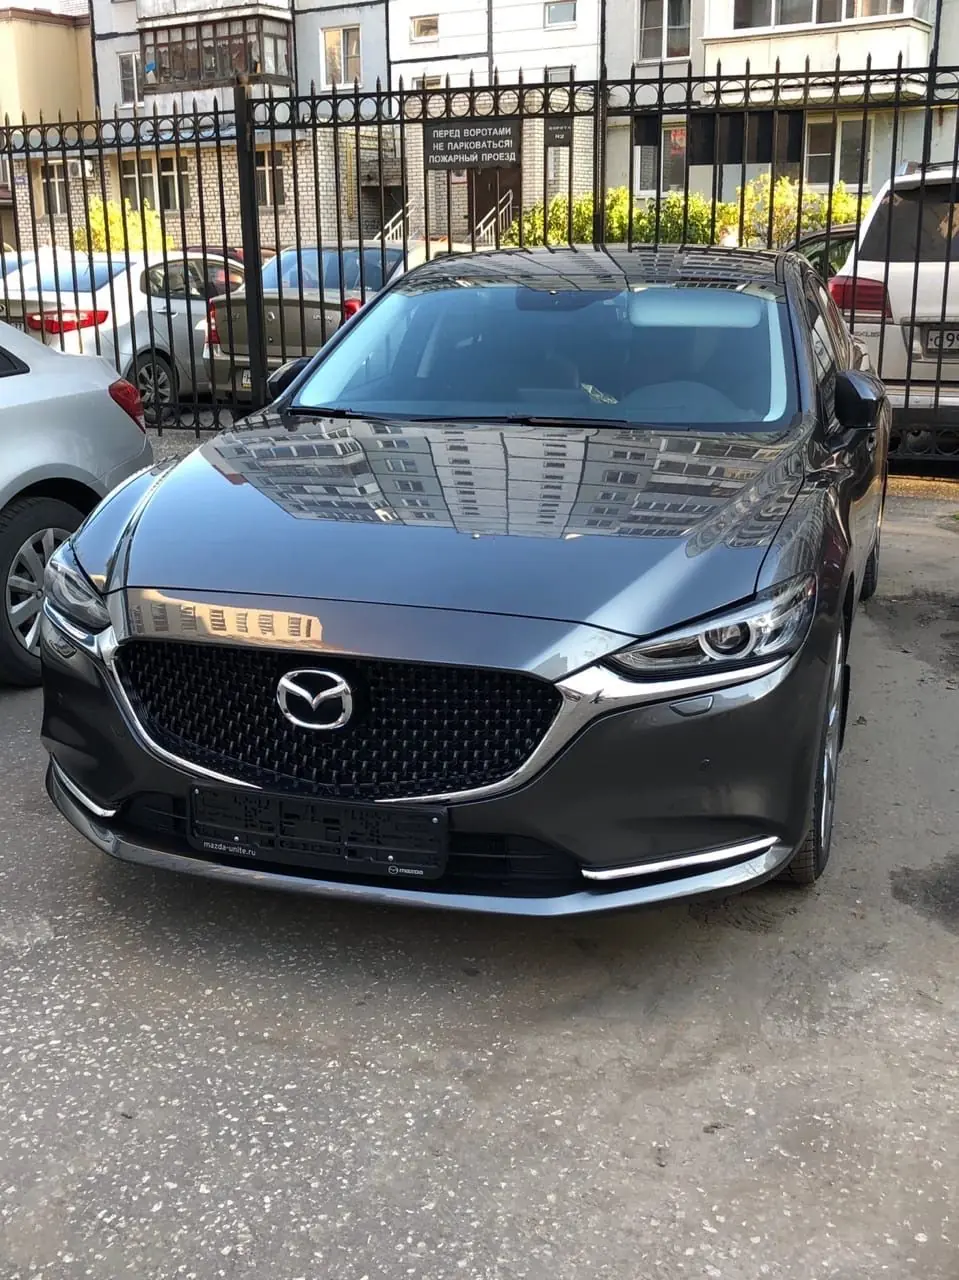 Mazda Mazda6 2019, До покупки Мазды 6 ездил на Hyundai